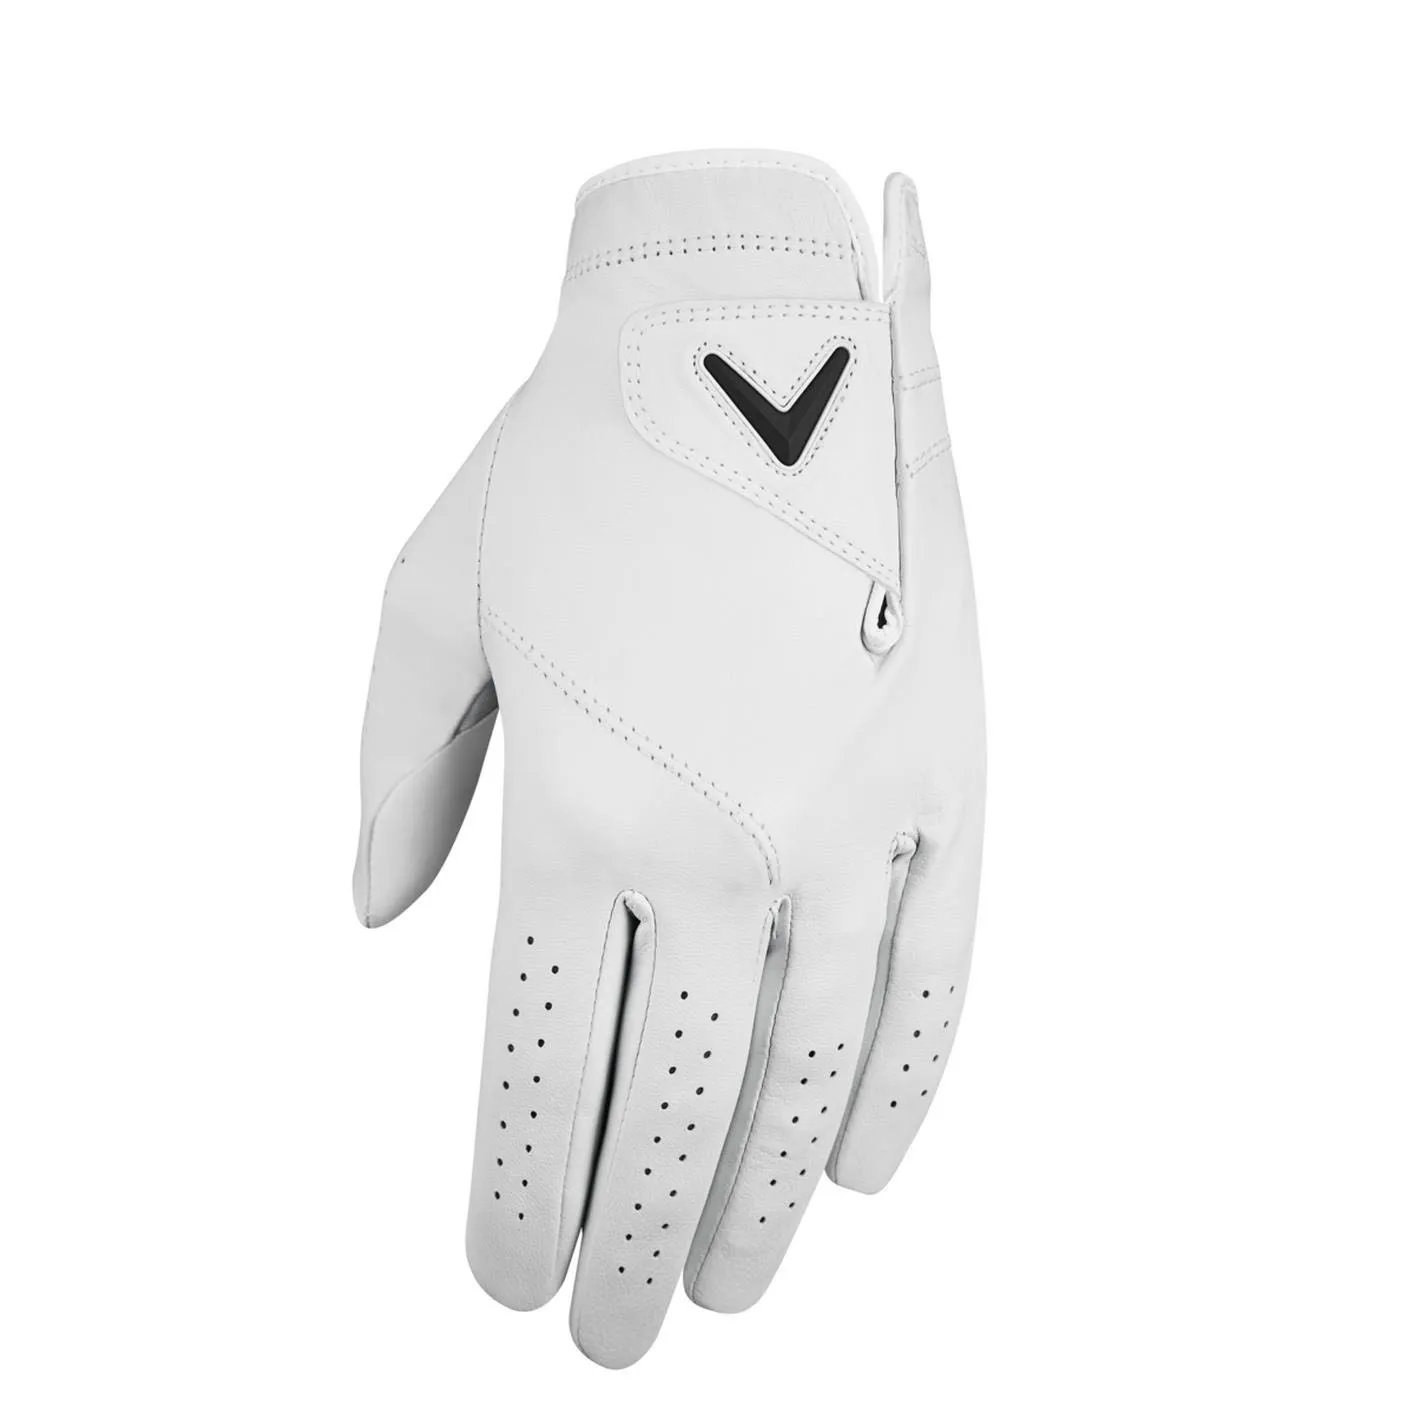 Gants de golf de la meilleure qualité, en cuir pur Cabretta, fabriqués sur mesure, gants de sport antidérapants pour l'entraînement au golf